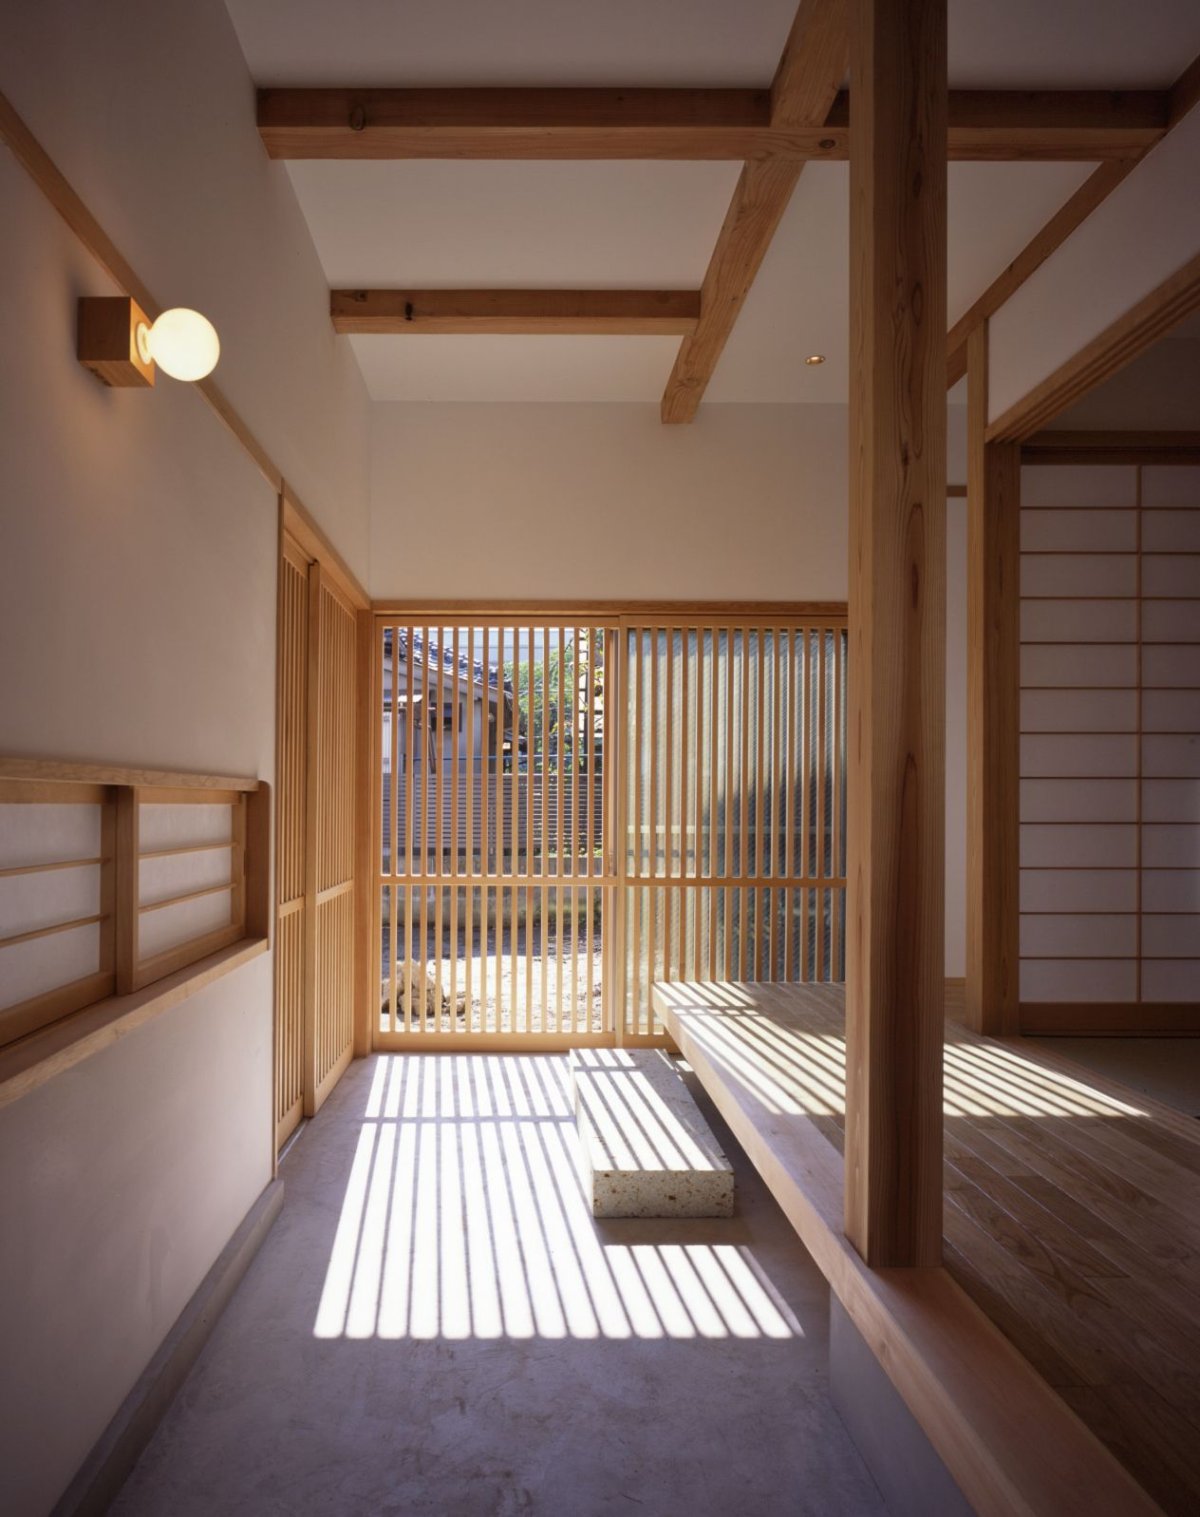 Интерьер японского дома